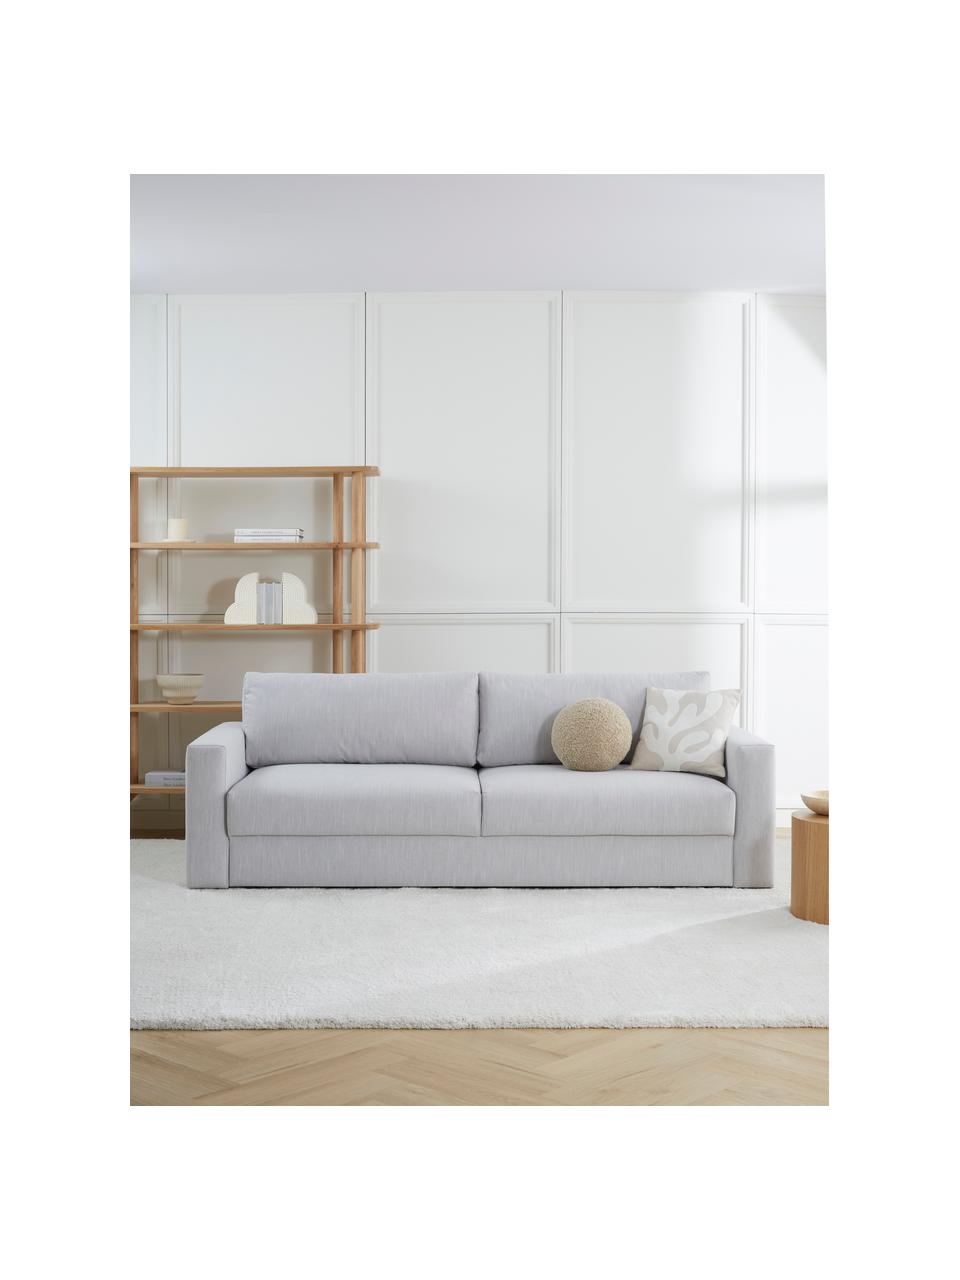 Schlafsofa Tasha (3-Sitzer) mit Stauraum, Bezug: 100% Polyester Der hochwe, Webstoff Hellgrau, B 235 x T 100 cm